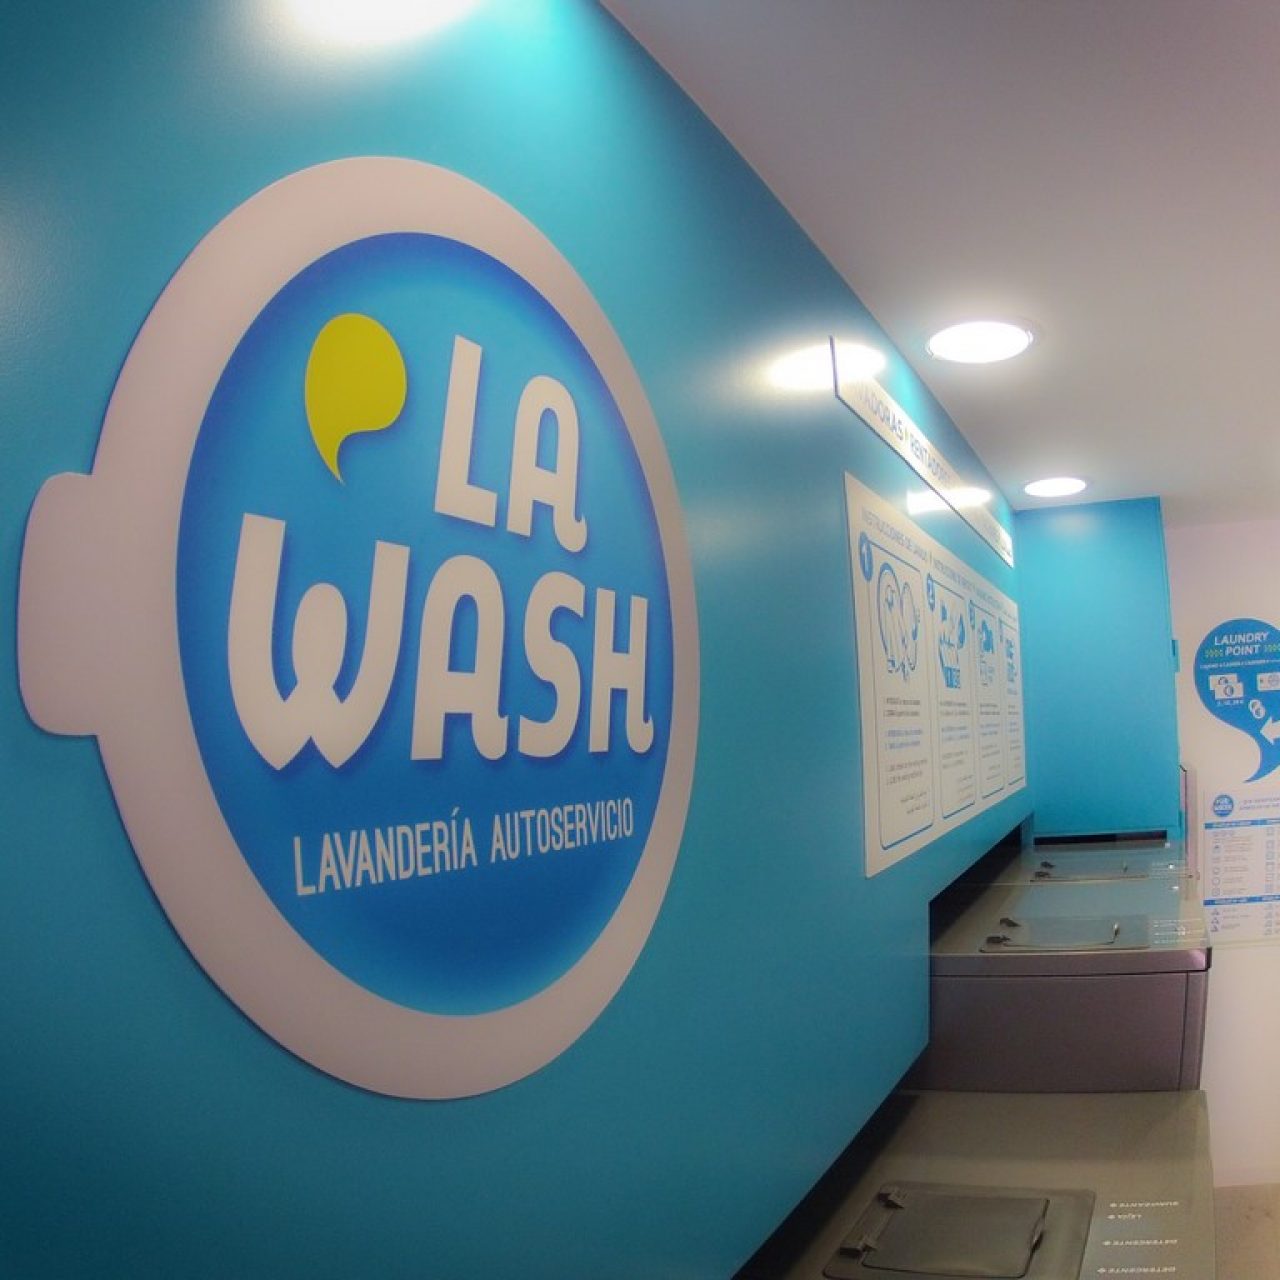 Ventajas de la lavandería autoservicio en Badajoz